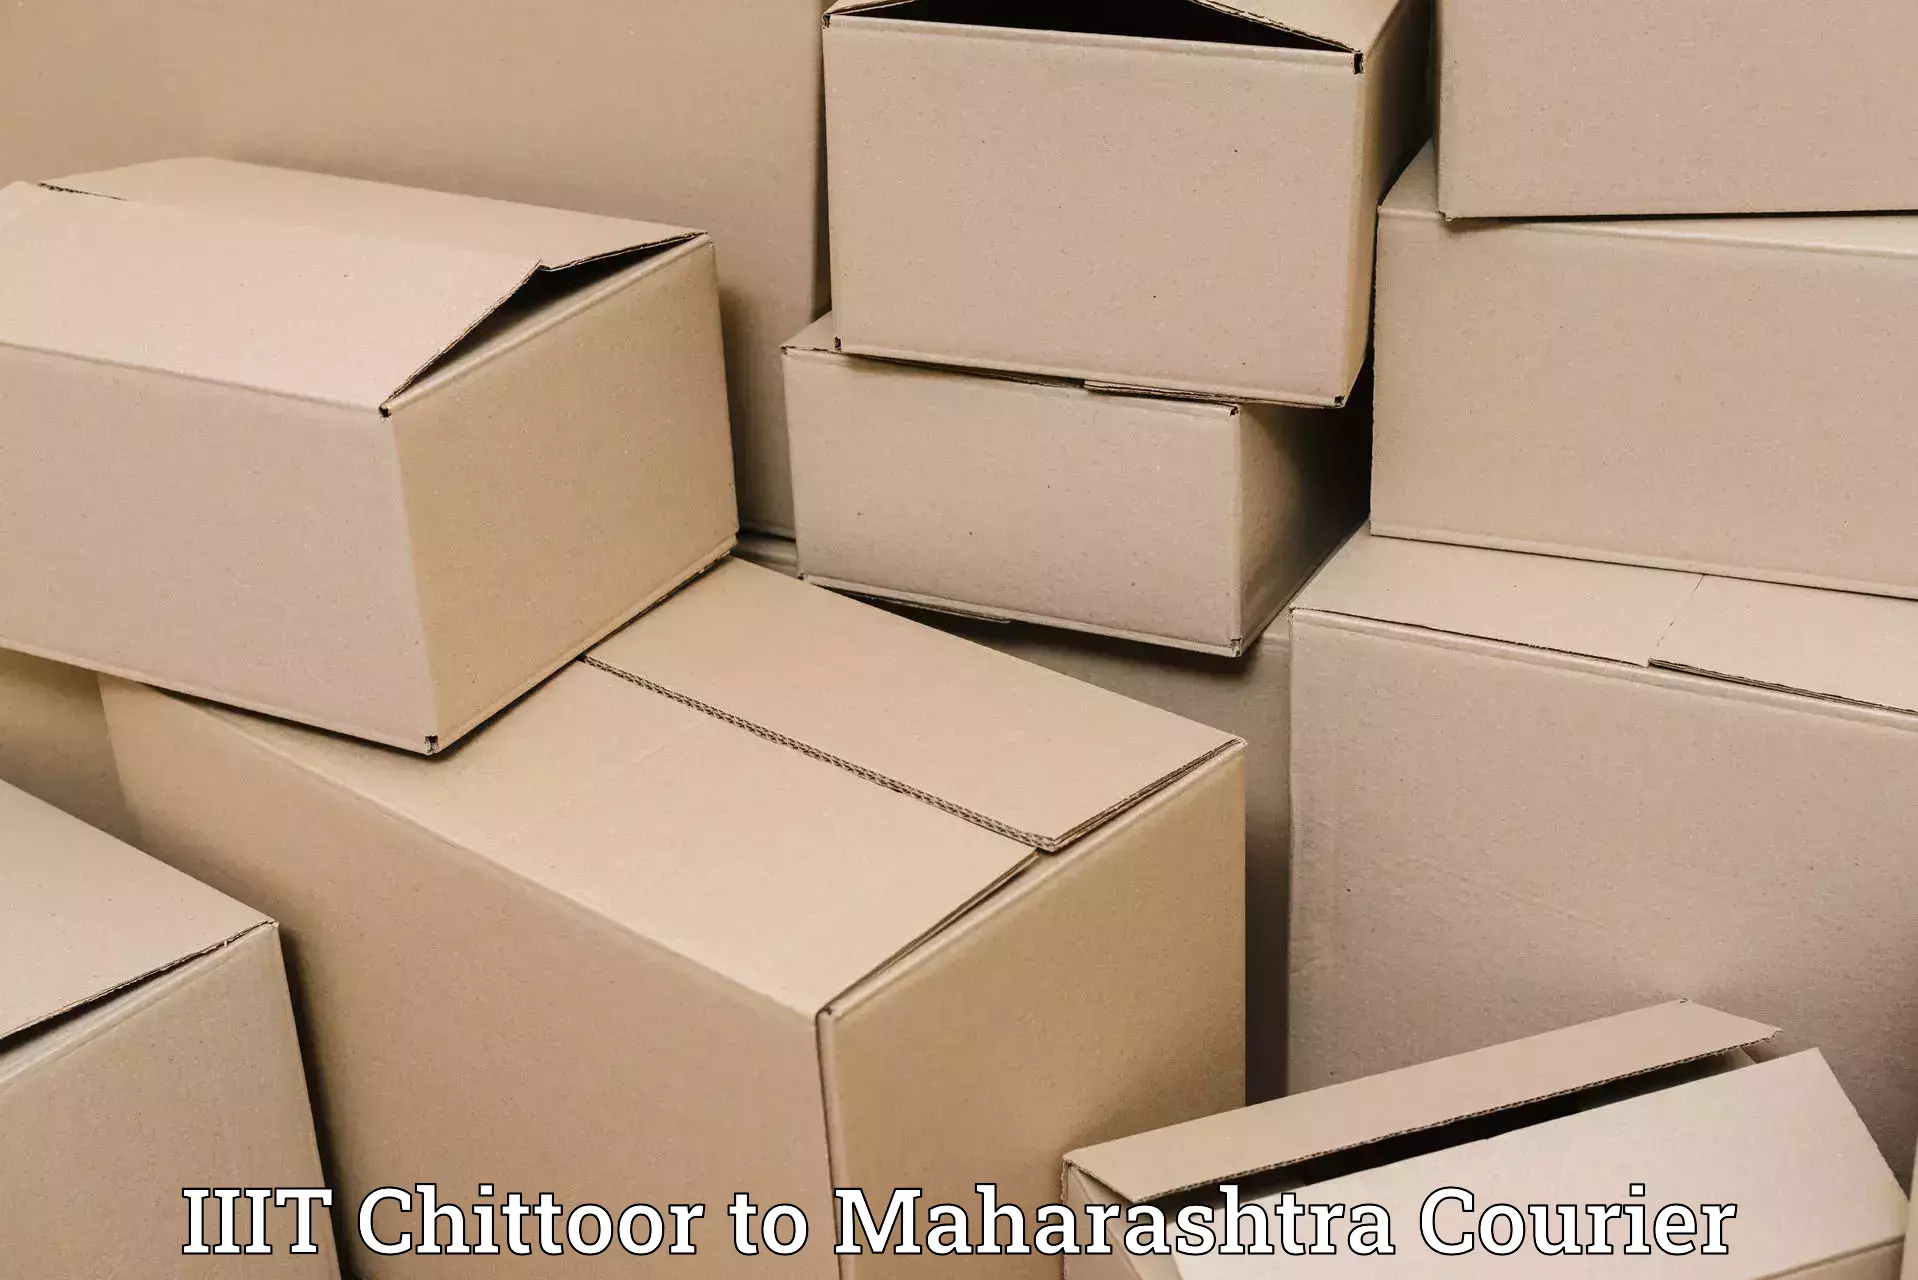 Professional courier handling in IIIT Chittoor to Sakoli